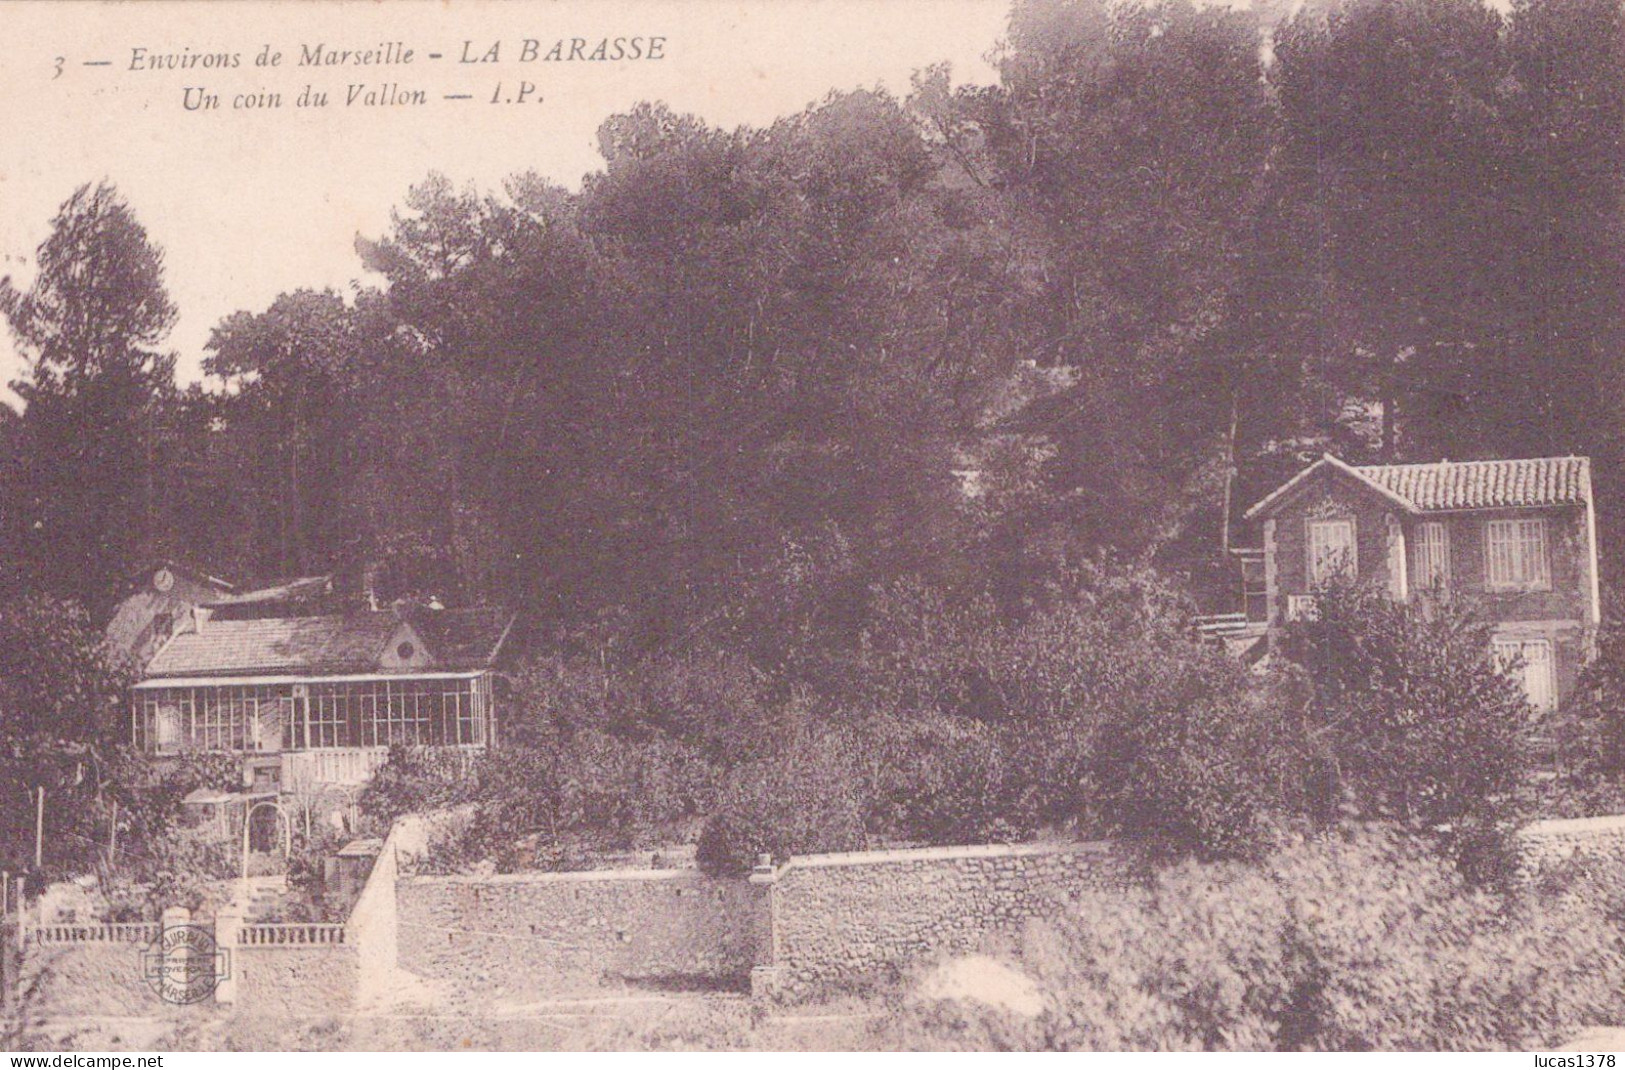 13 / MARSEILLE / LA BARASSE / UN COIN DU VALLON  / IP 3 - Saint Marcel, La Barasse, St Menet